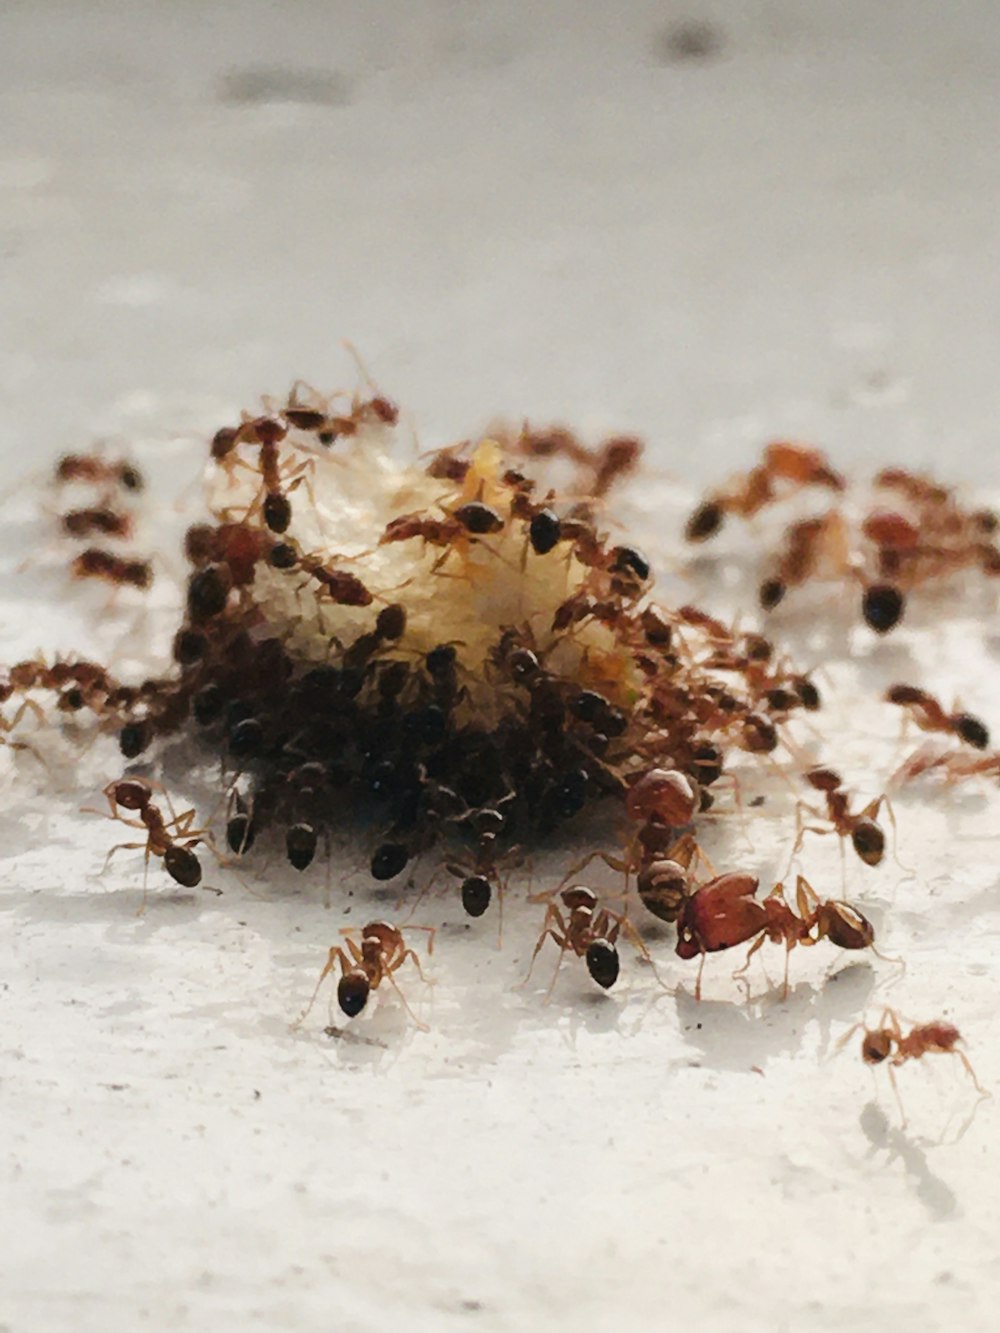 fourmi brune et noire sur une surface blanche